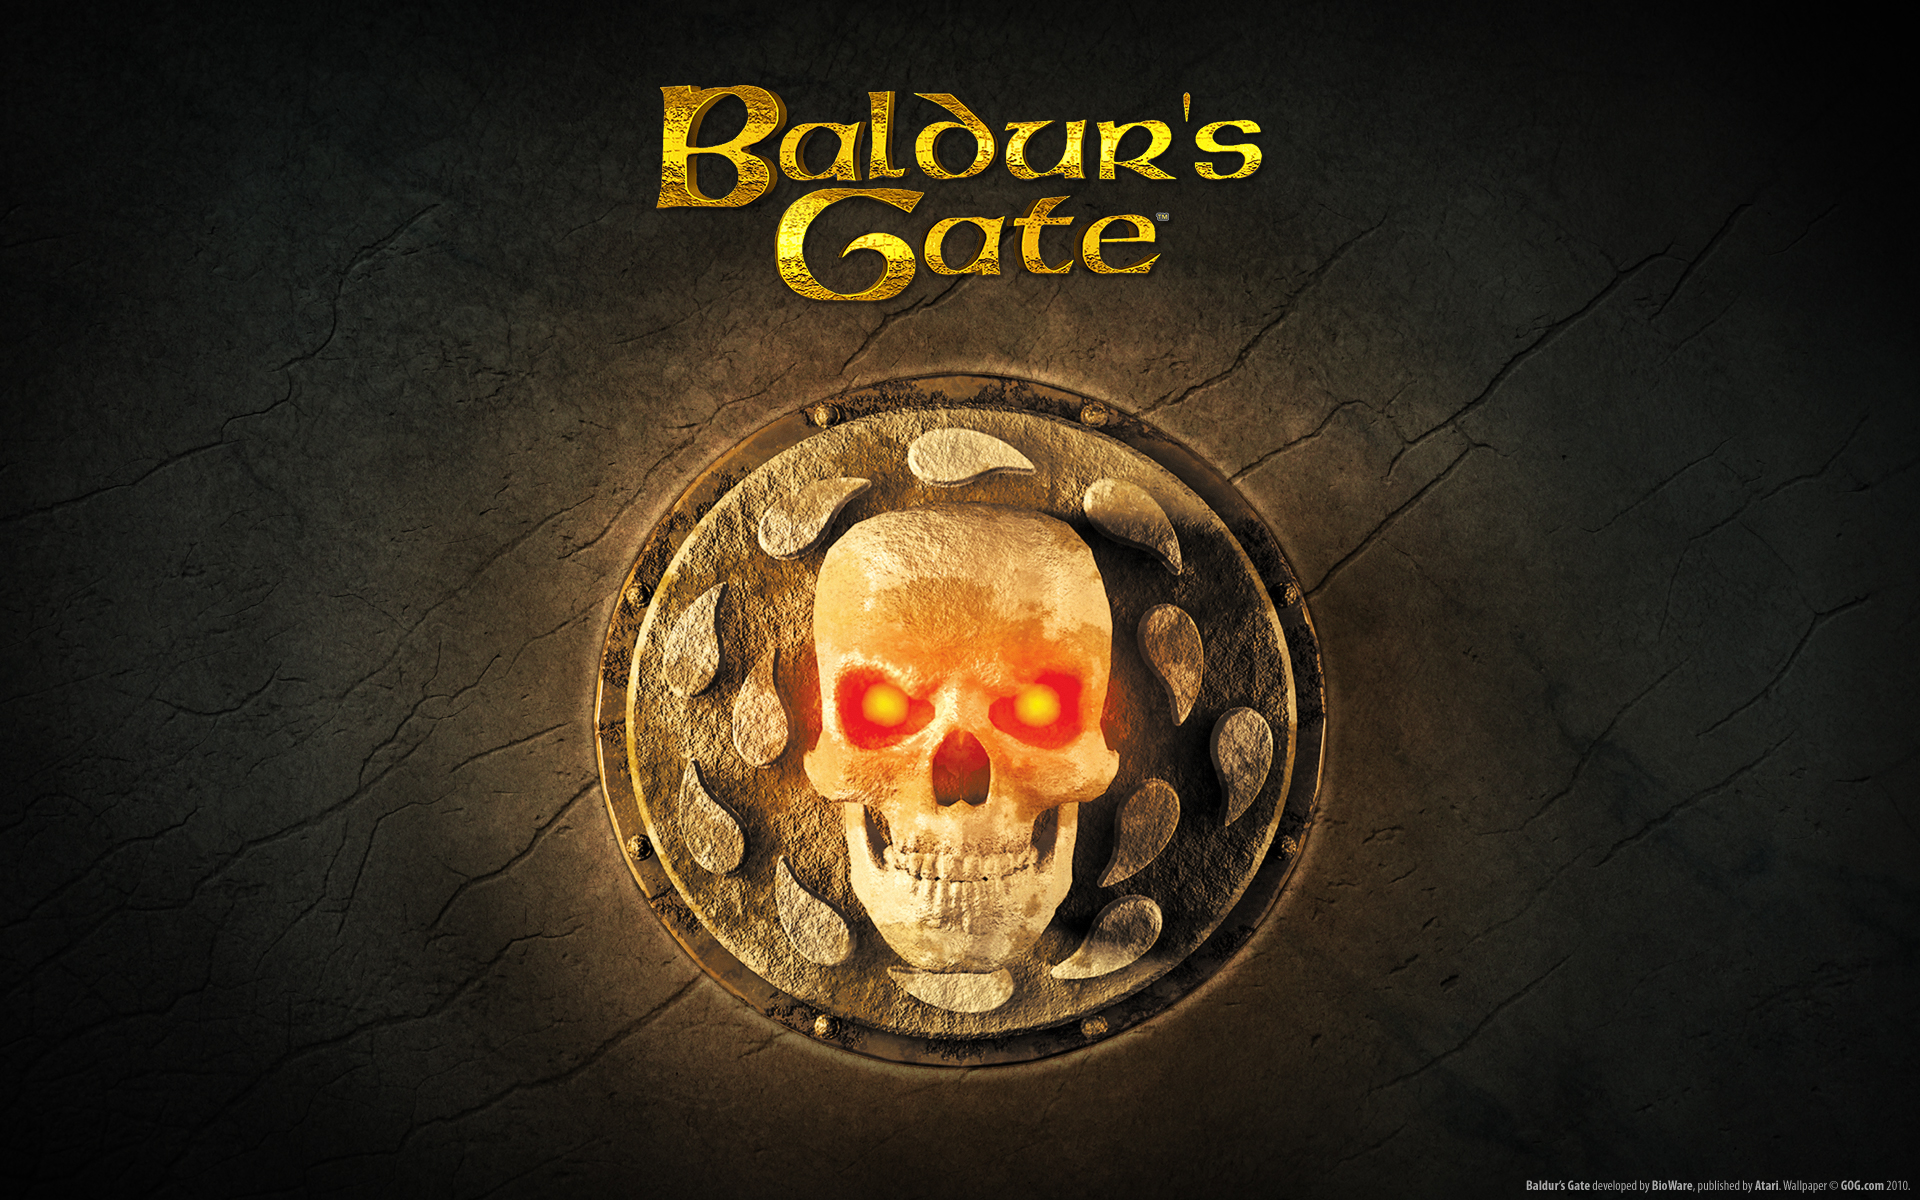 Baldur’s Gate: Ensinando novos truques a um cachorro velho